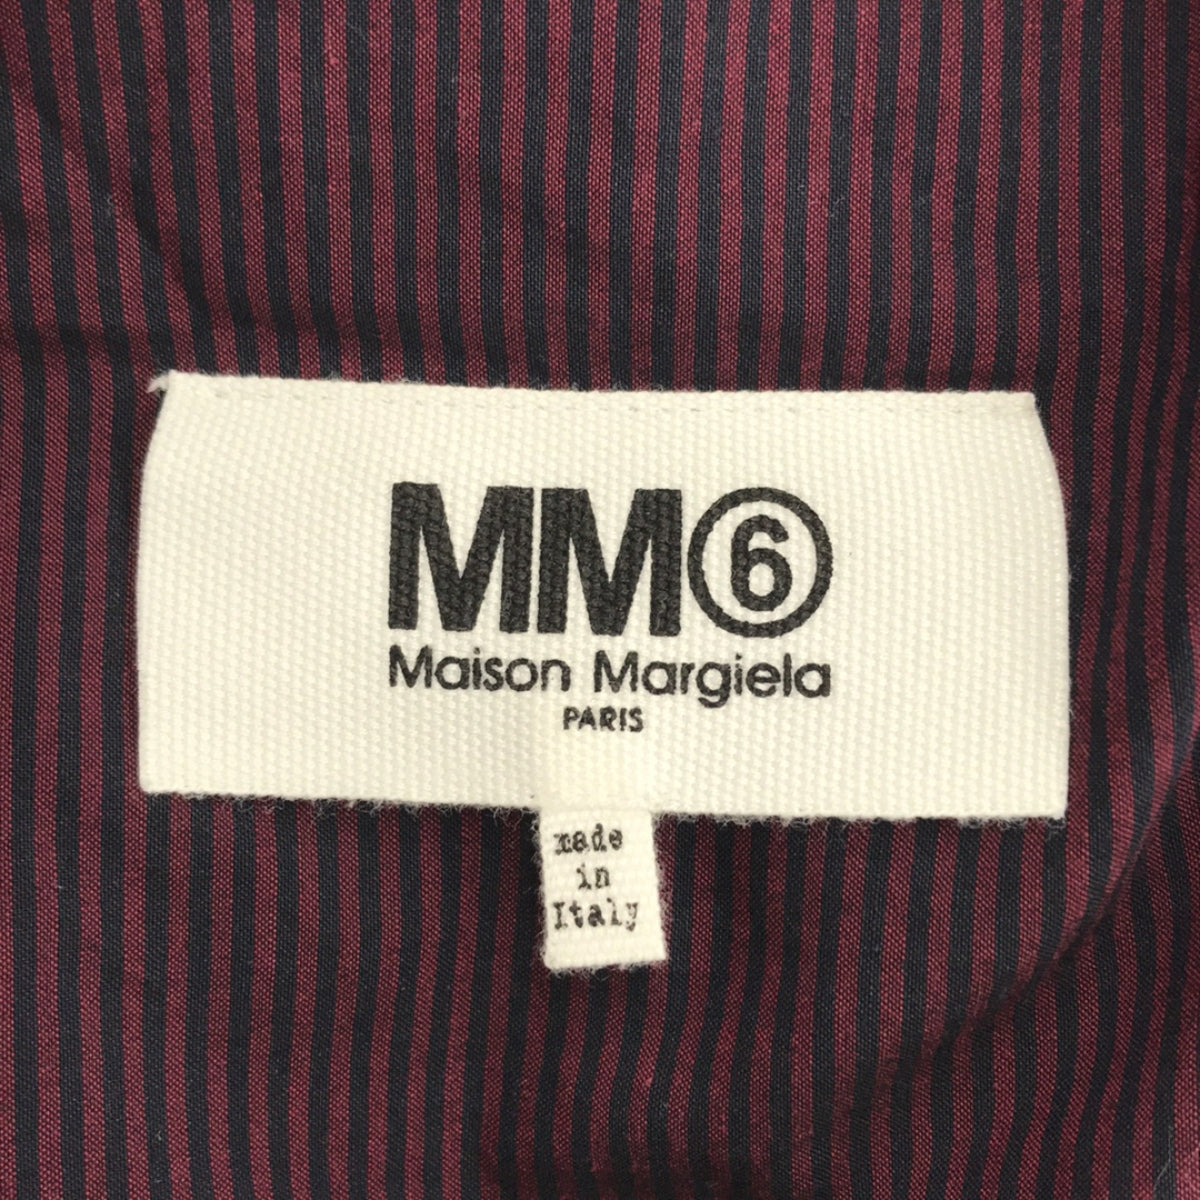 MM6 Maison Margiela / エムエムシックスメゾンマルジェラ | ストライプ オーバーサイズ ノースリーブワンピース | 38 |  レディース